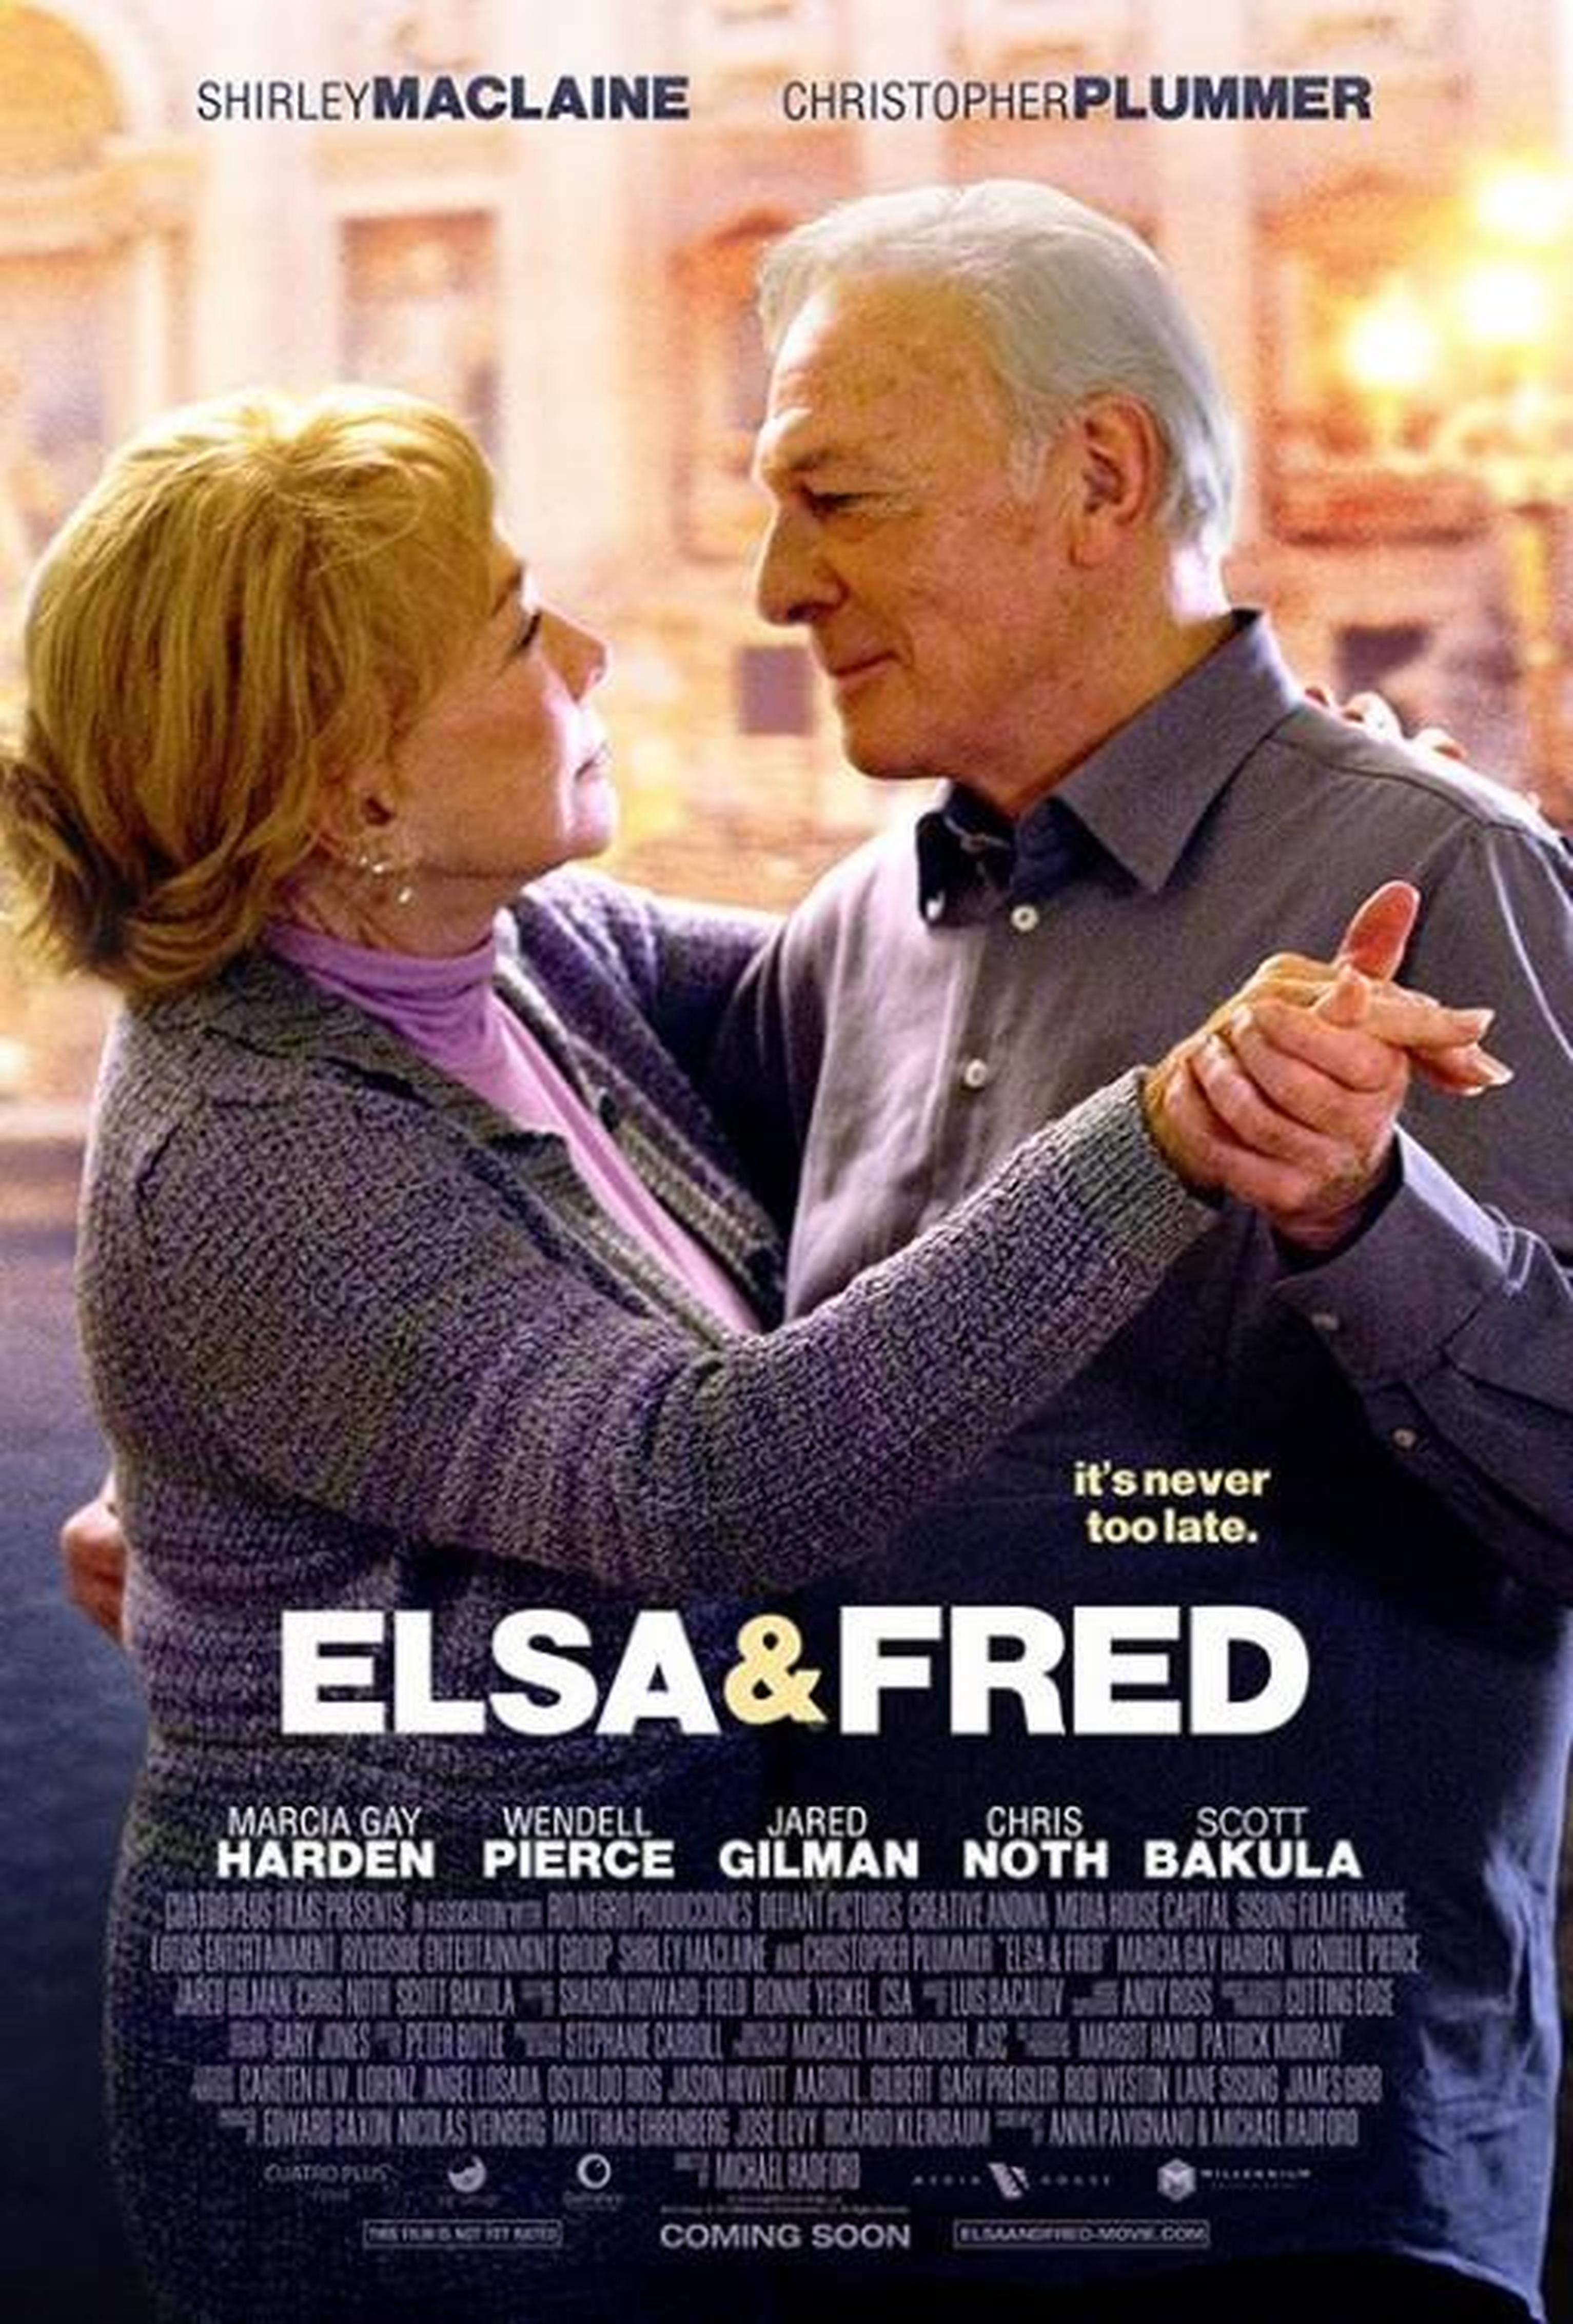 《爱尔莎和弗雷德》(2014) 这可能就是爱情的样子：雪莉·麦克雷恩&克里斯托弗·普卢默